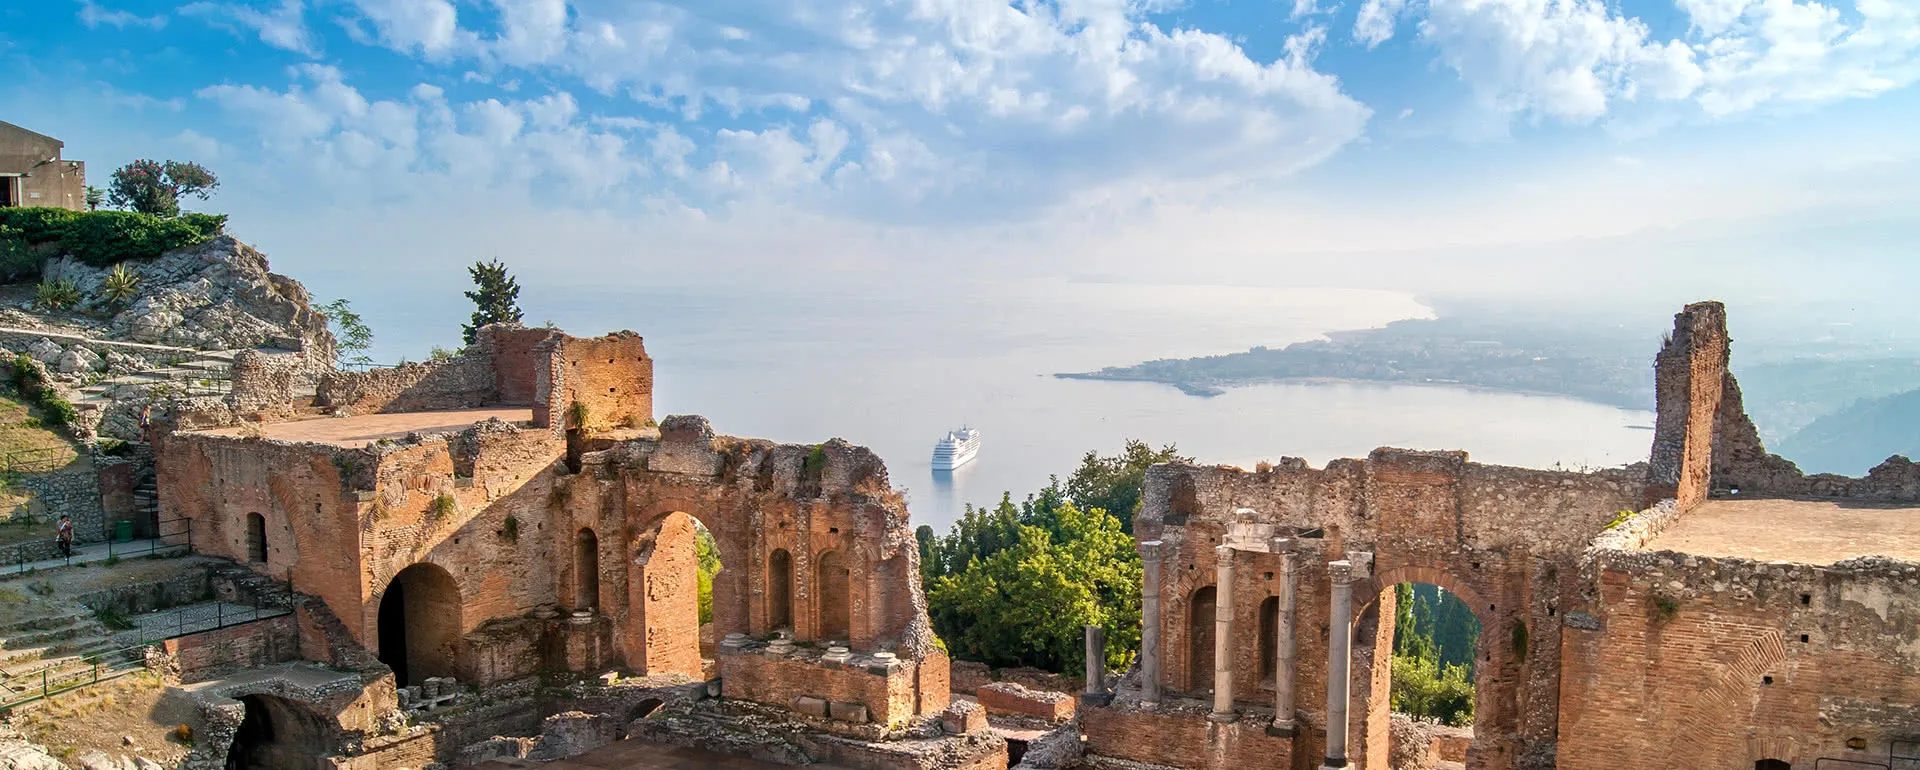 Taormina - das Reiseziel mit Jugendherbergen